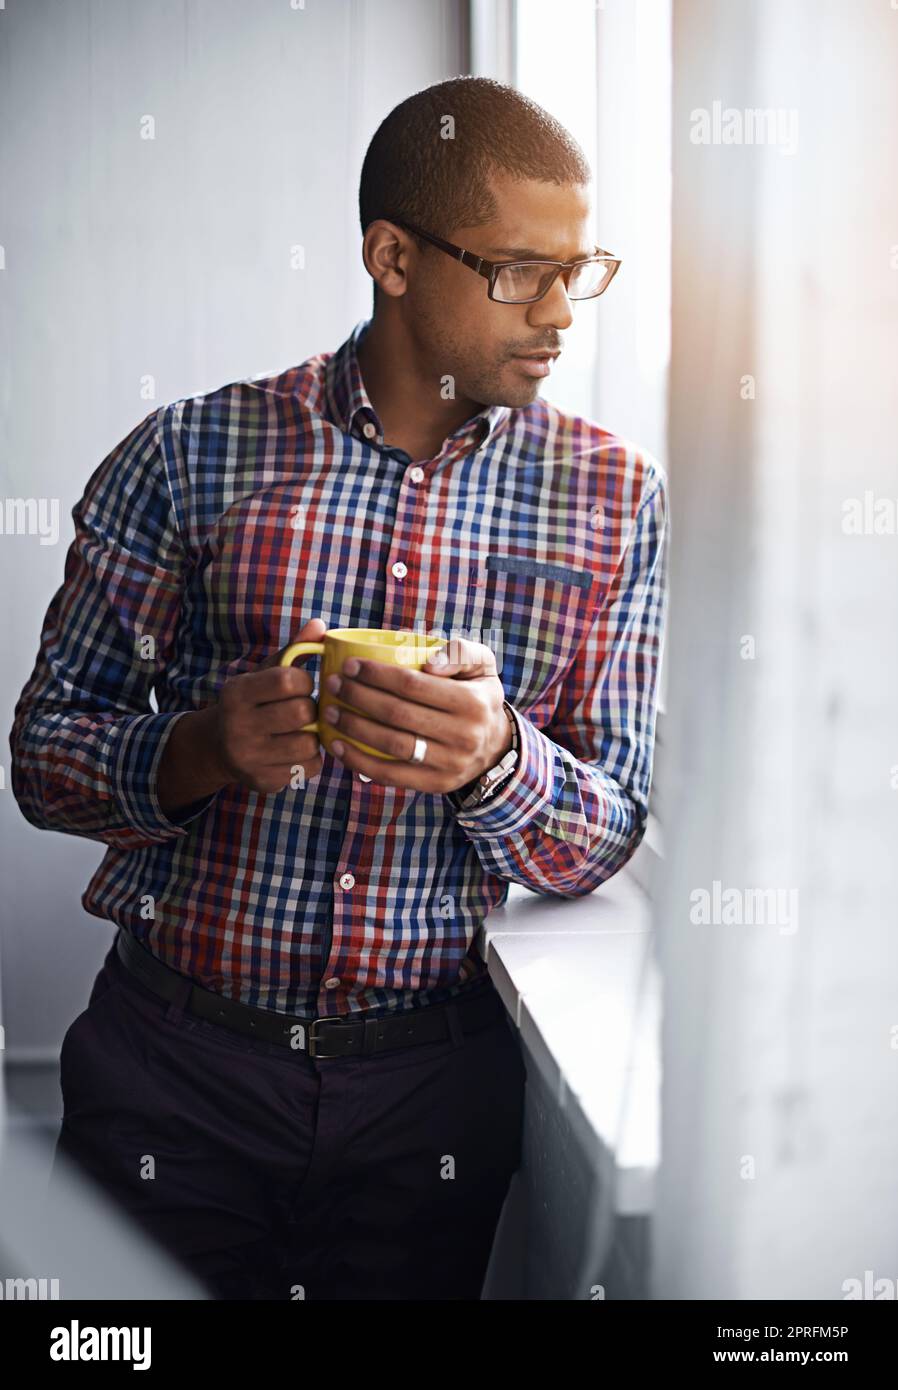 Ein Geschäftsmann, der eine Pause macht, während er aus dem Fenster schaut. Ein afroamerikanischer Mann, der sich drinnen entspannen kann, indem er sich die Aktivitäten im Freien anschaut. Ein Büroangestellter beobachtet das Stadtleben unter dem Gebäude. Stockfoto